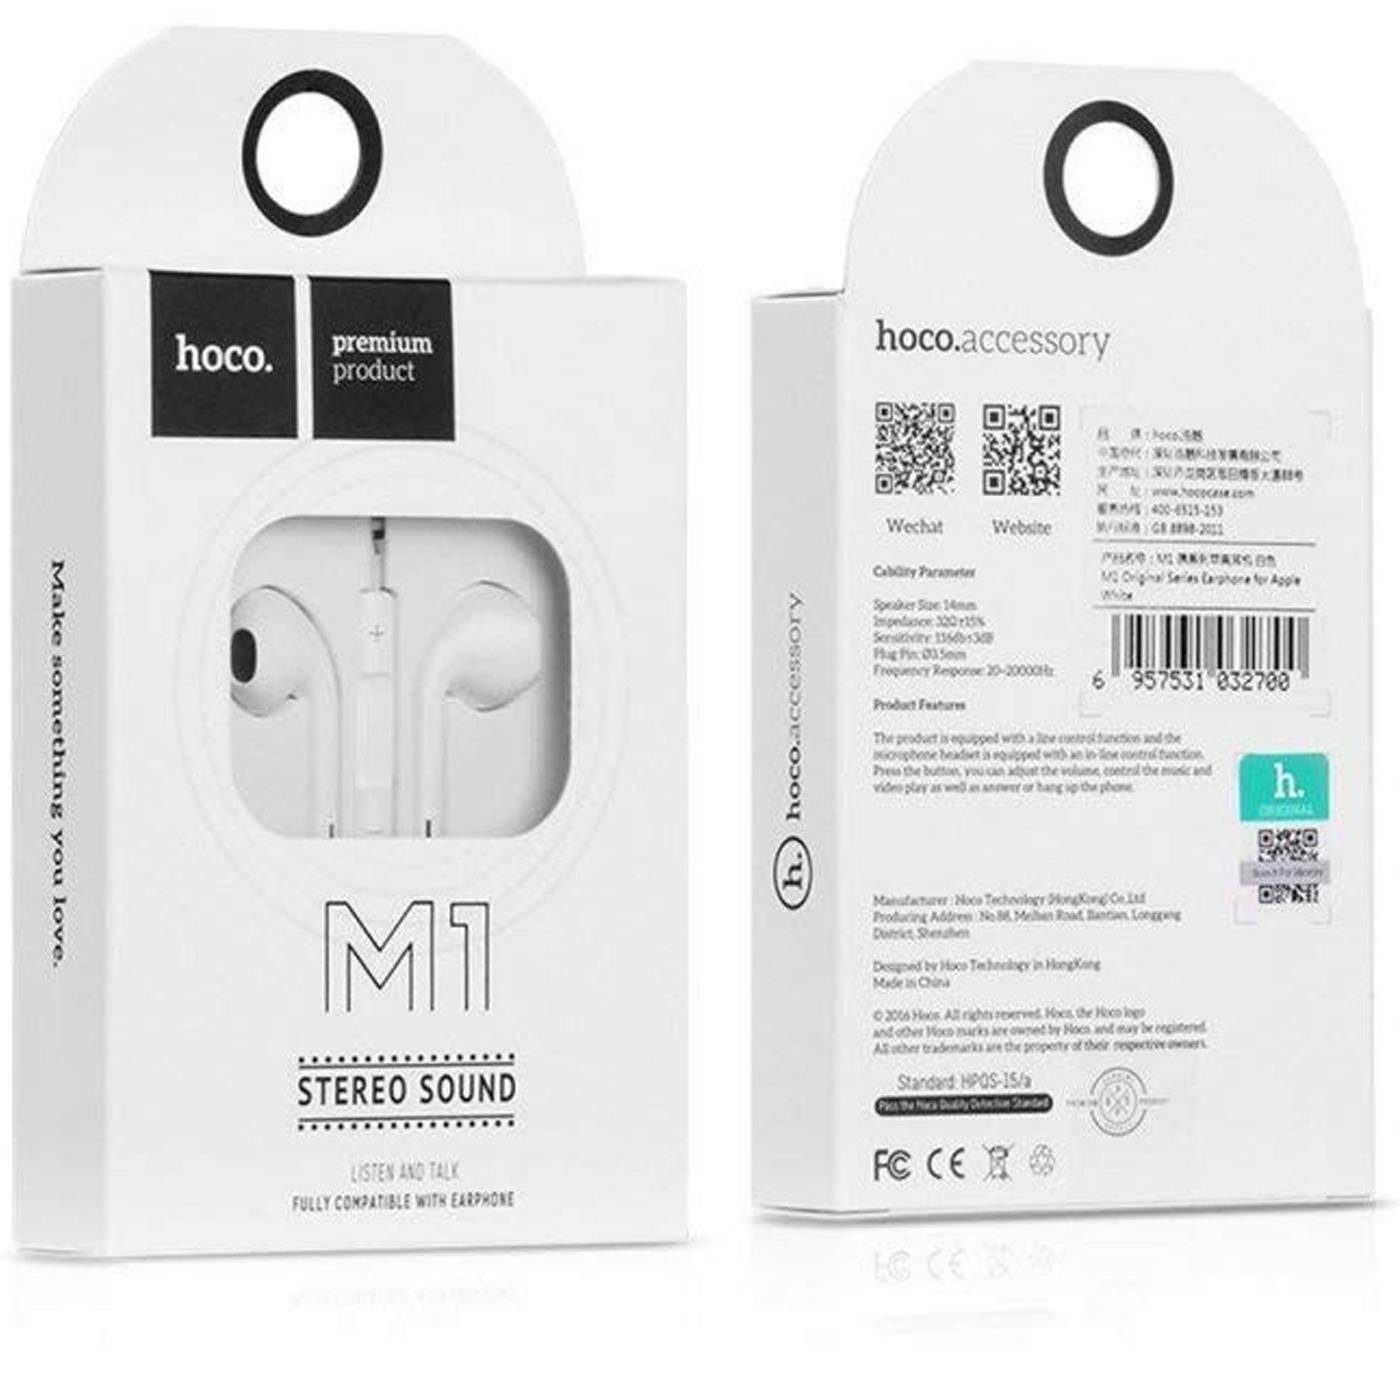 HOCO M1 3,5mm Klinke Smartphone-Headset Headset mm In (Köpfhörer 3.5 mit Mikrofon Ear Klinke Beat)